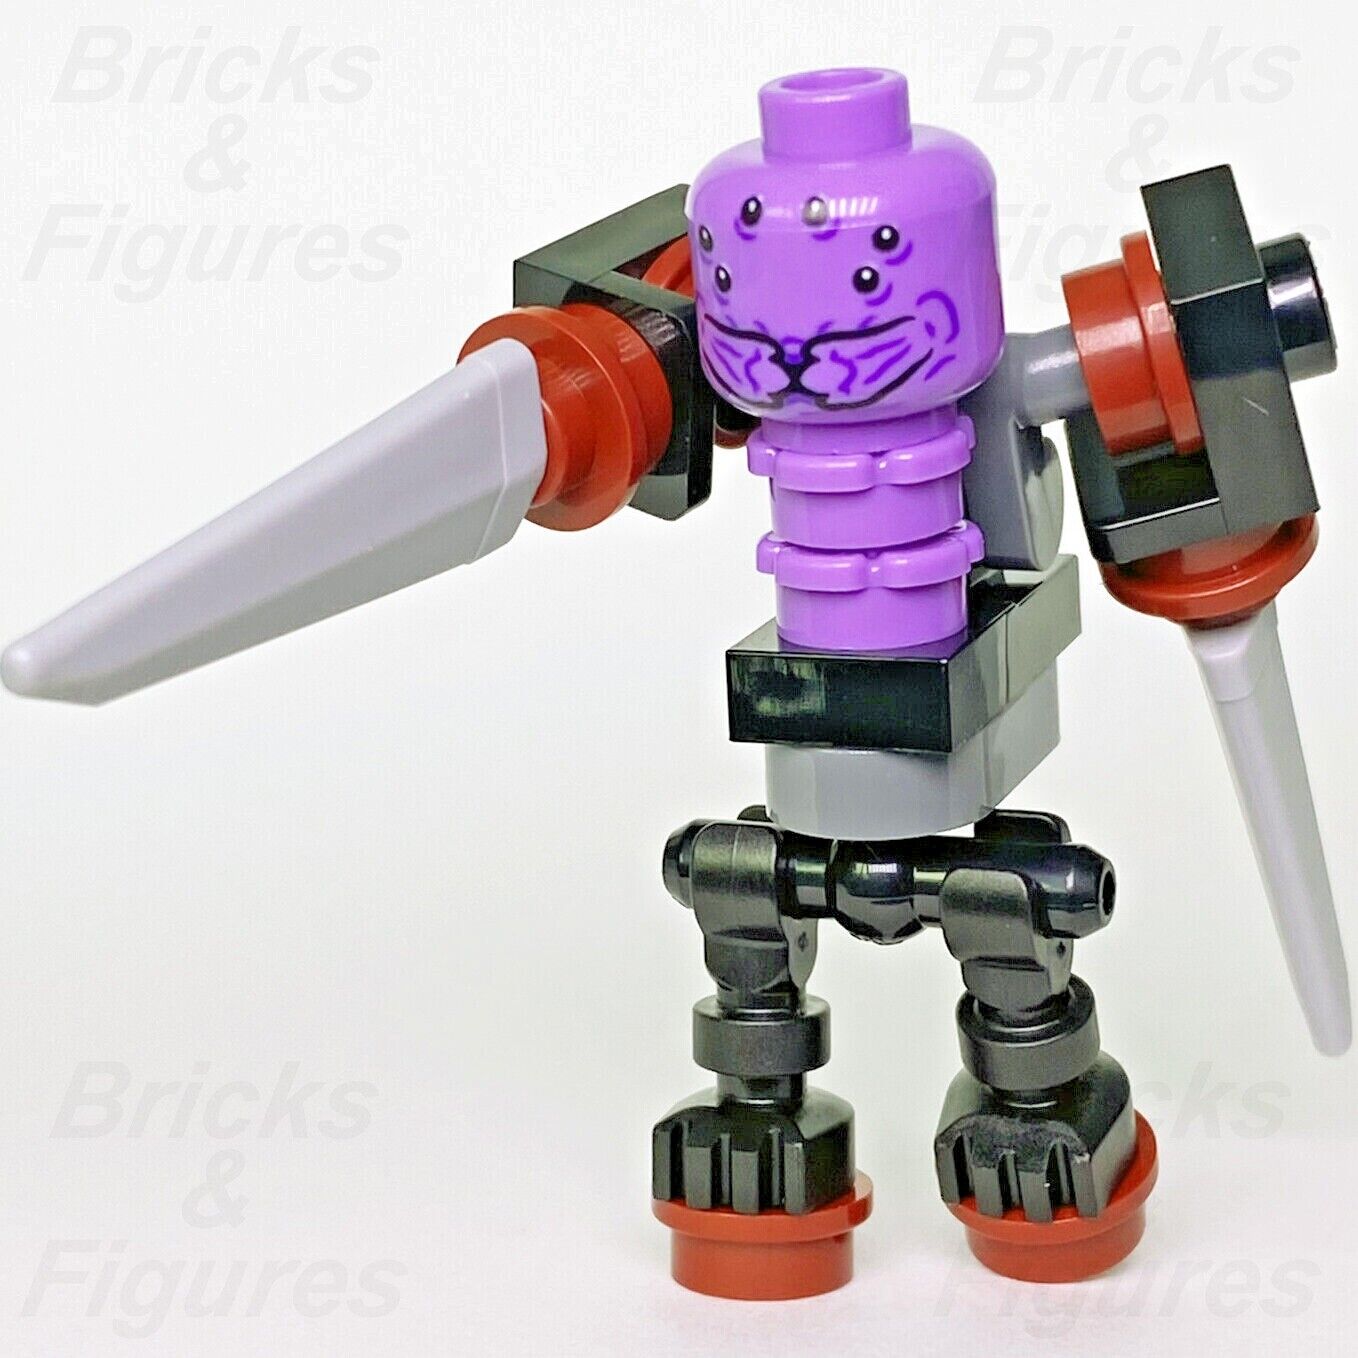 Marvel Super Heroes LEGO Miek Mech Body Avengers Endgame Minifigure 40525 sh808 - Bricks & Figures